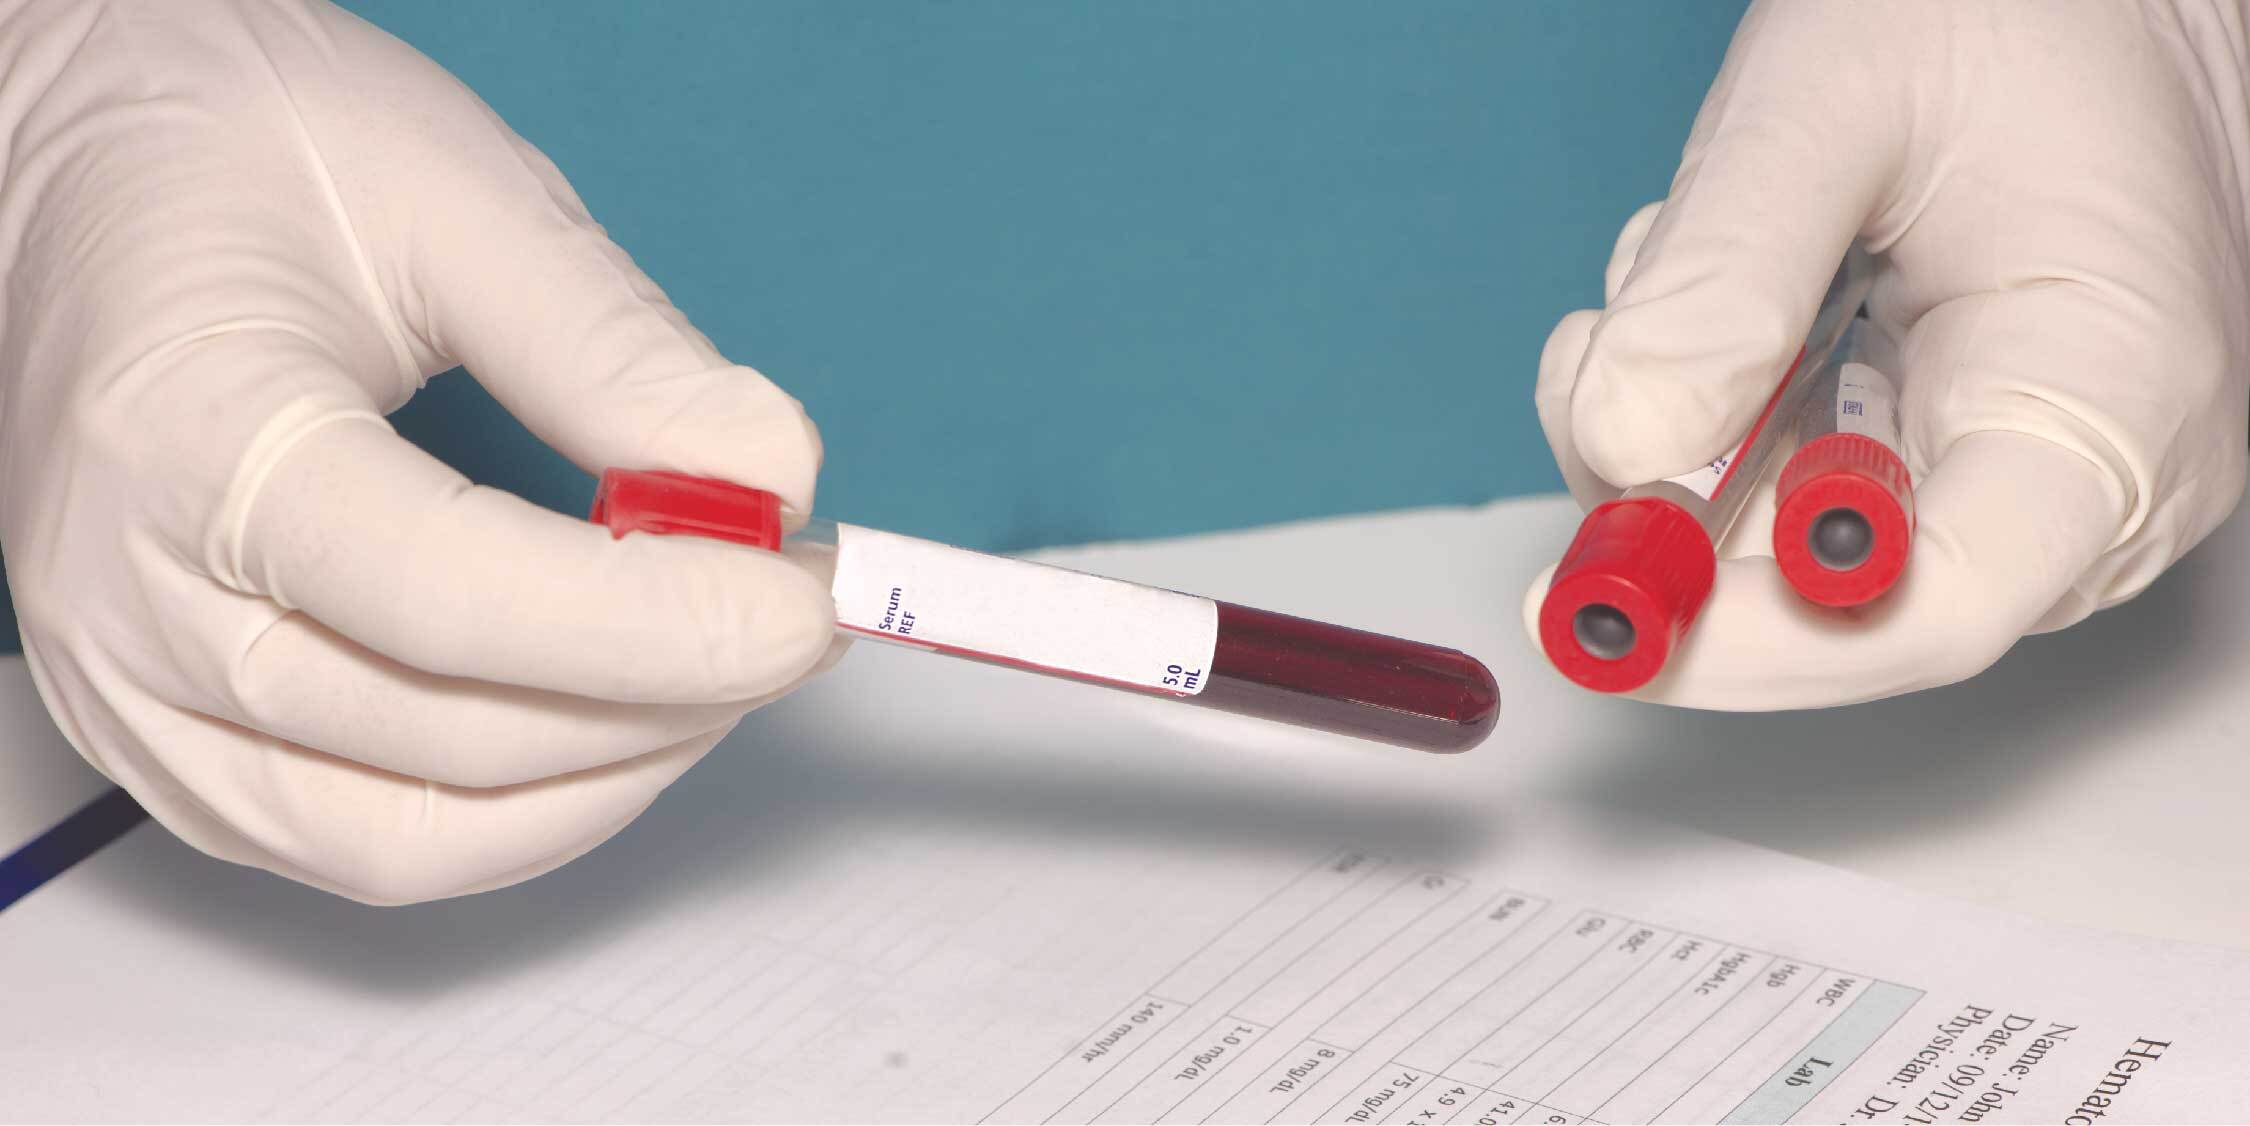 Сдача на спид. Тестирование крови. Взятие крови на ВИЧ гепатиты. Исследование крови на ВИЧ картинками.